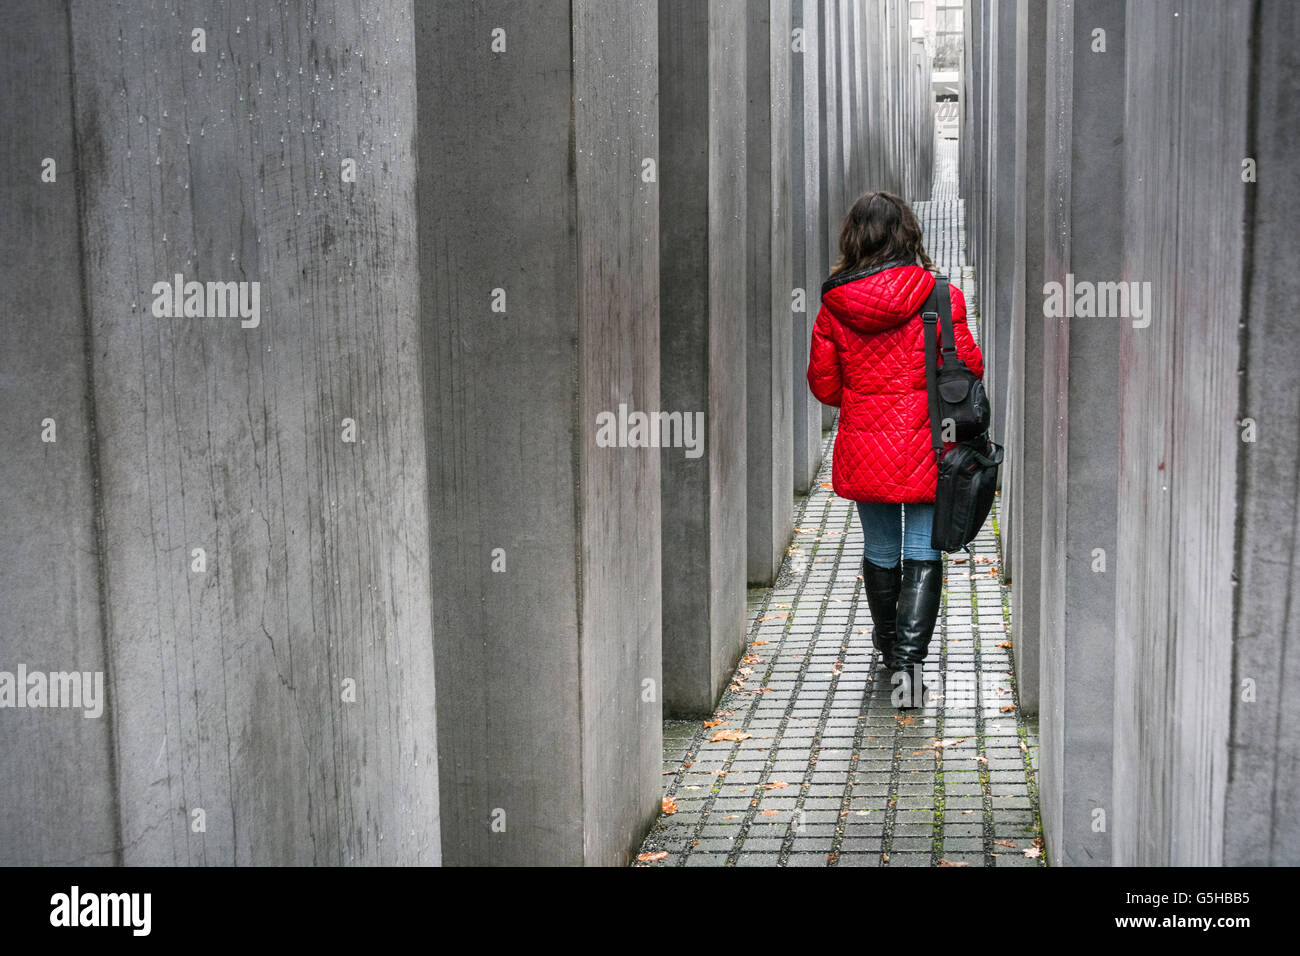 Una mujer en una chaqueta roja en el Memorial a los judíos asesinados de Europa o el Memorial del Holocausto, Berlín, Alemania Foto de stock